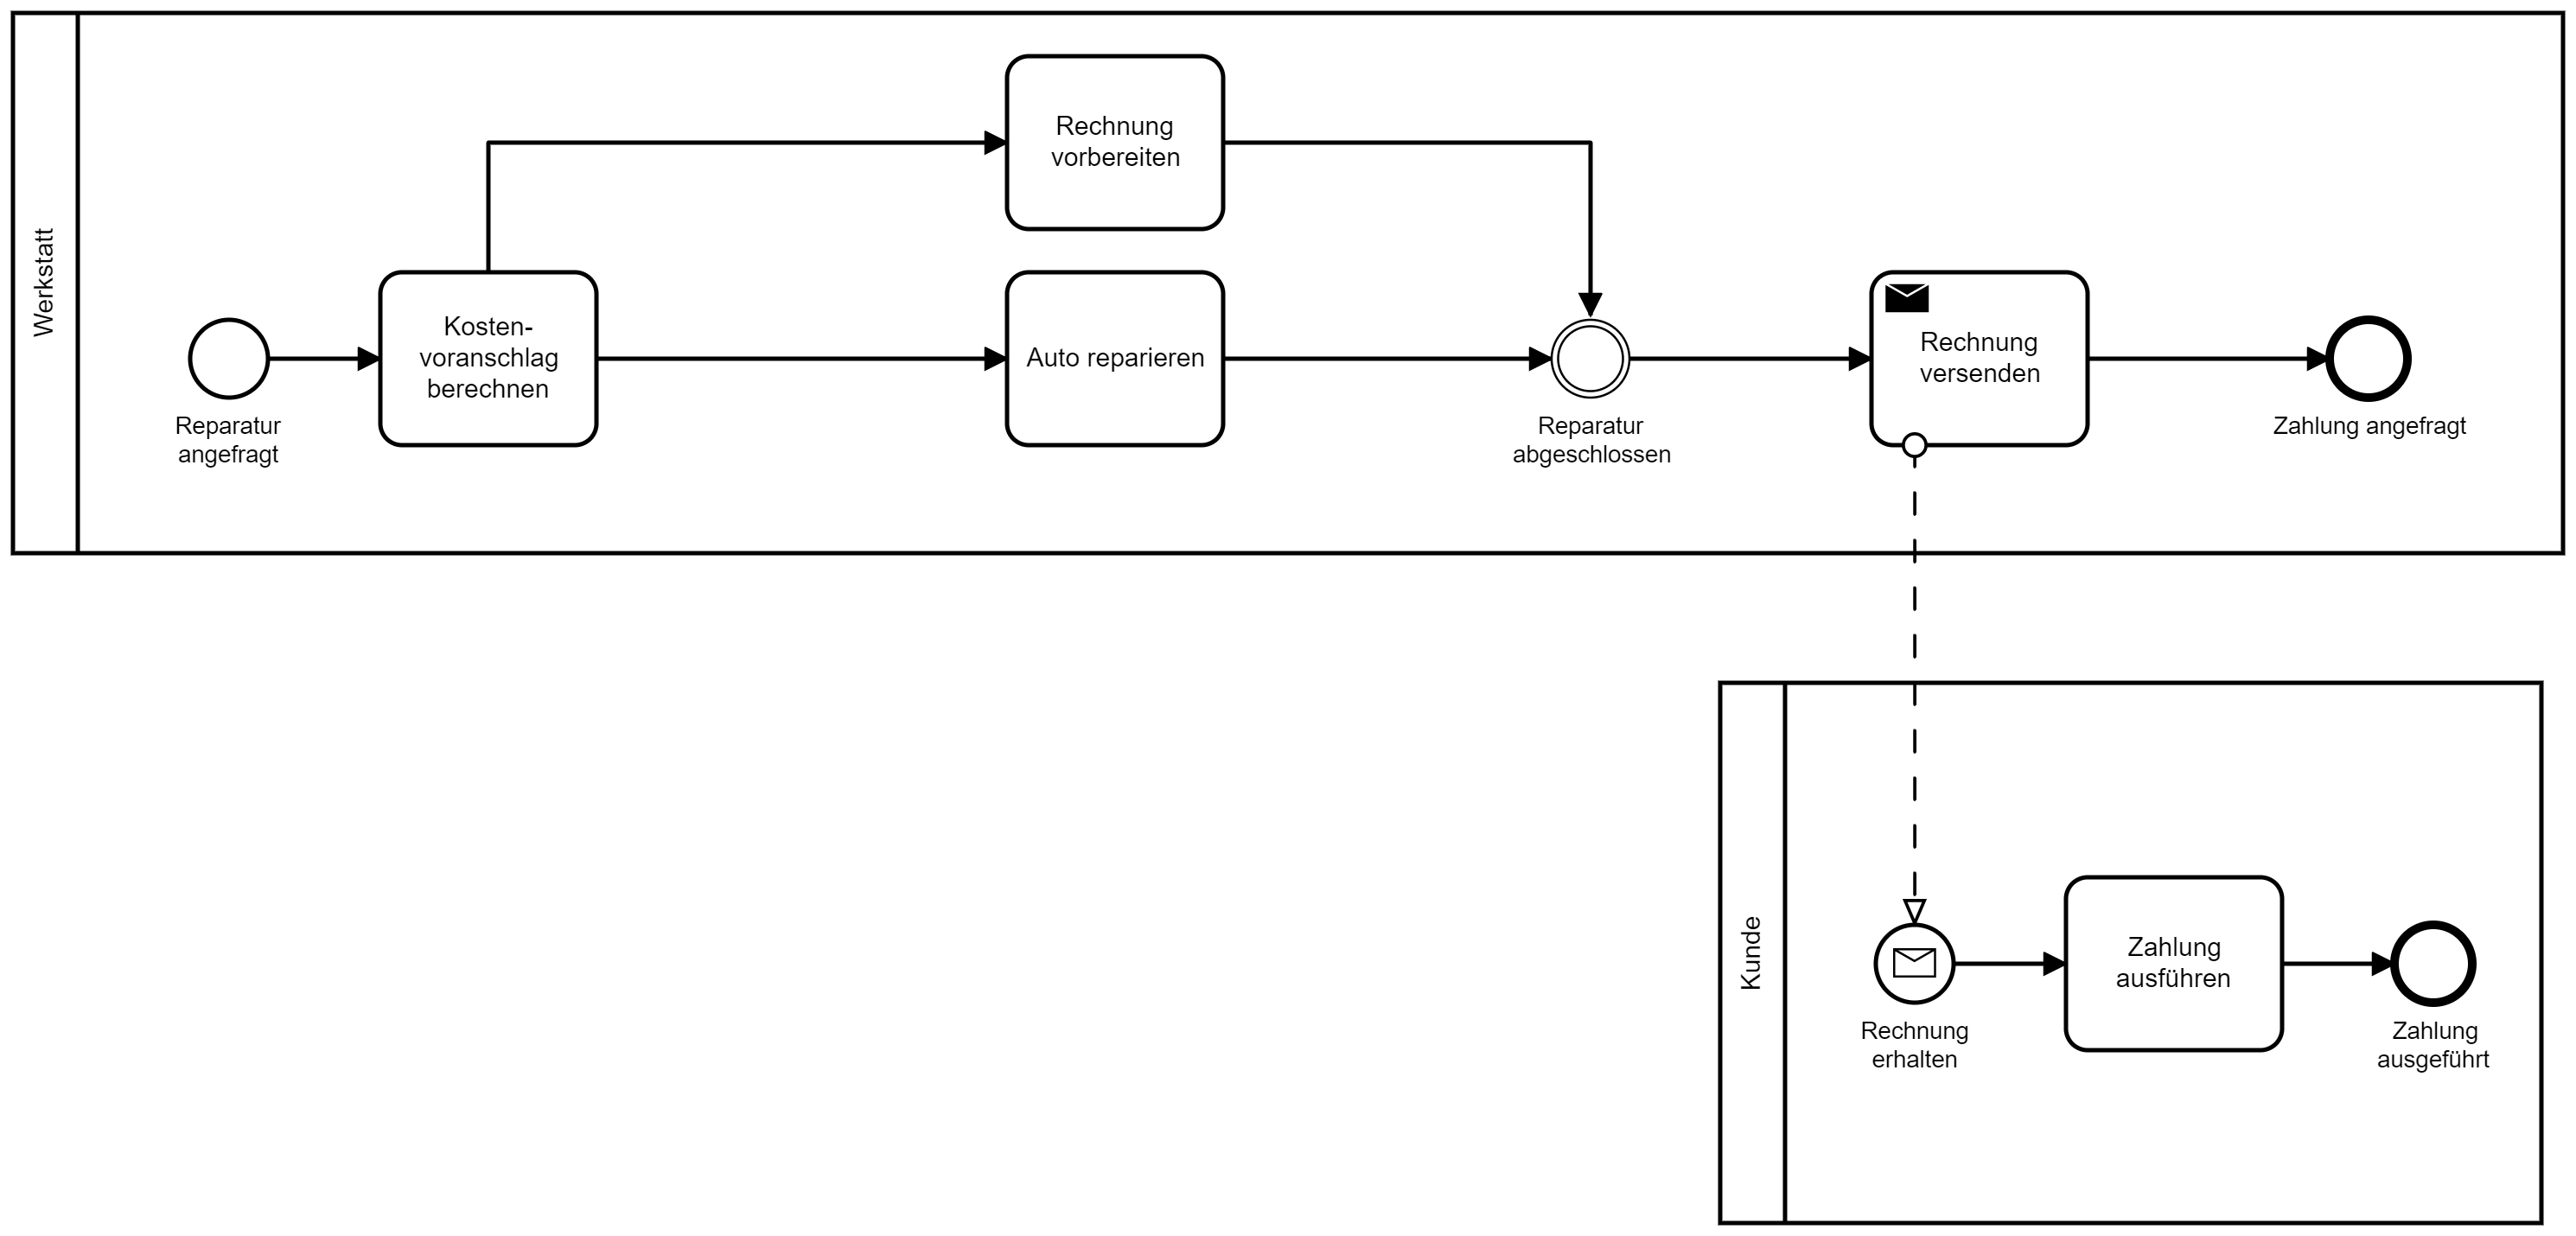 1_BPMN-Diagramm Validierung Beispiel